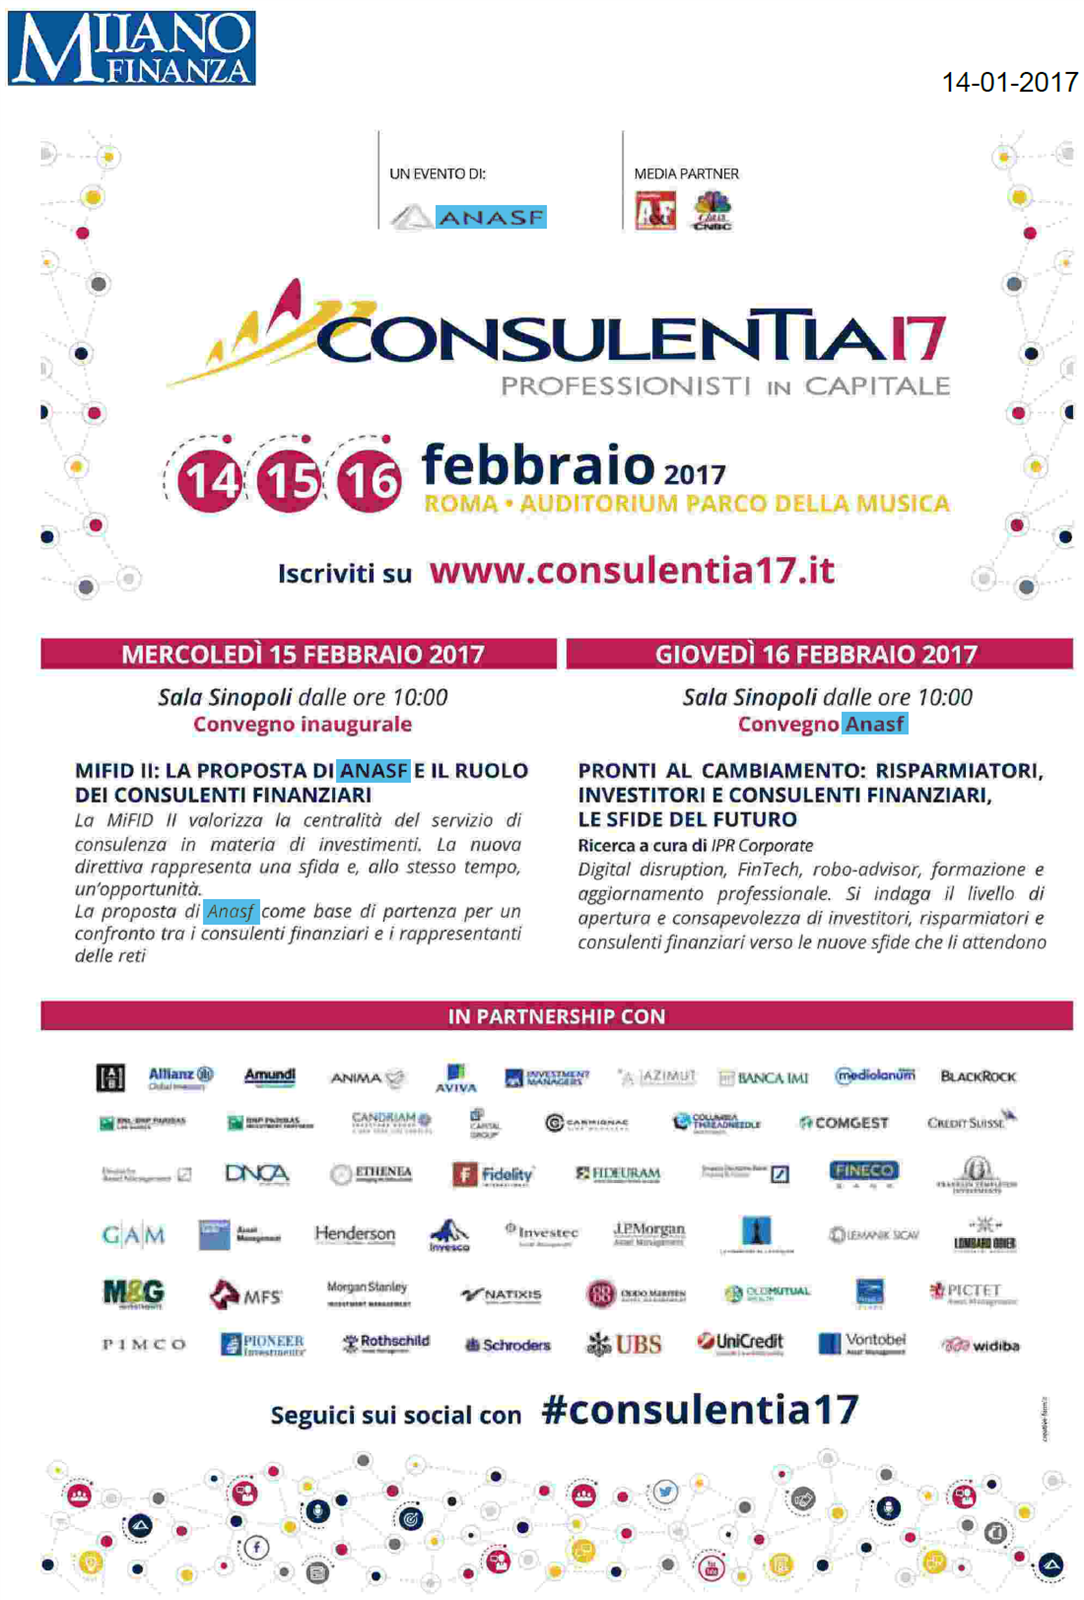 La pubblicità di ConsulenTia17 Roma su Milano Finanza